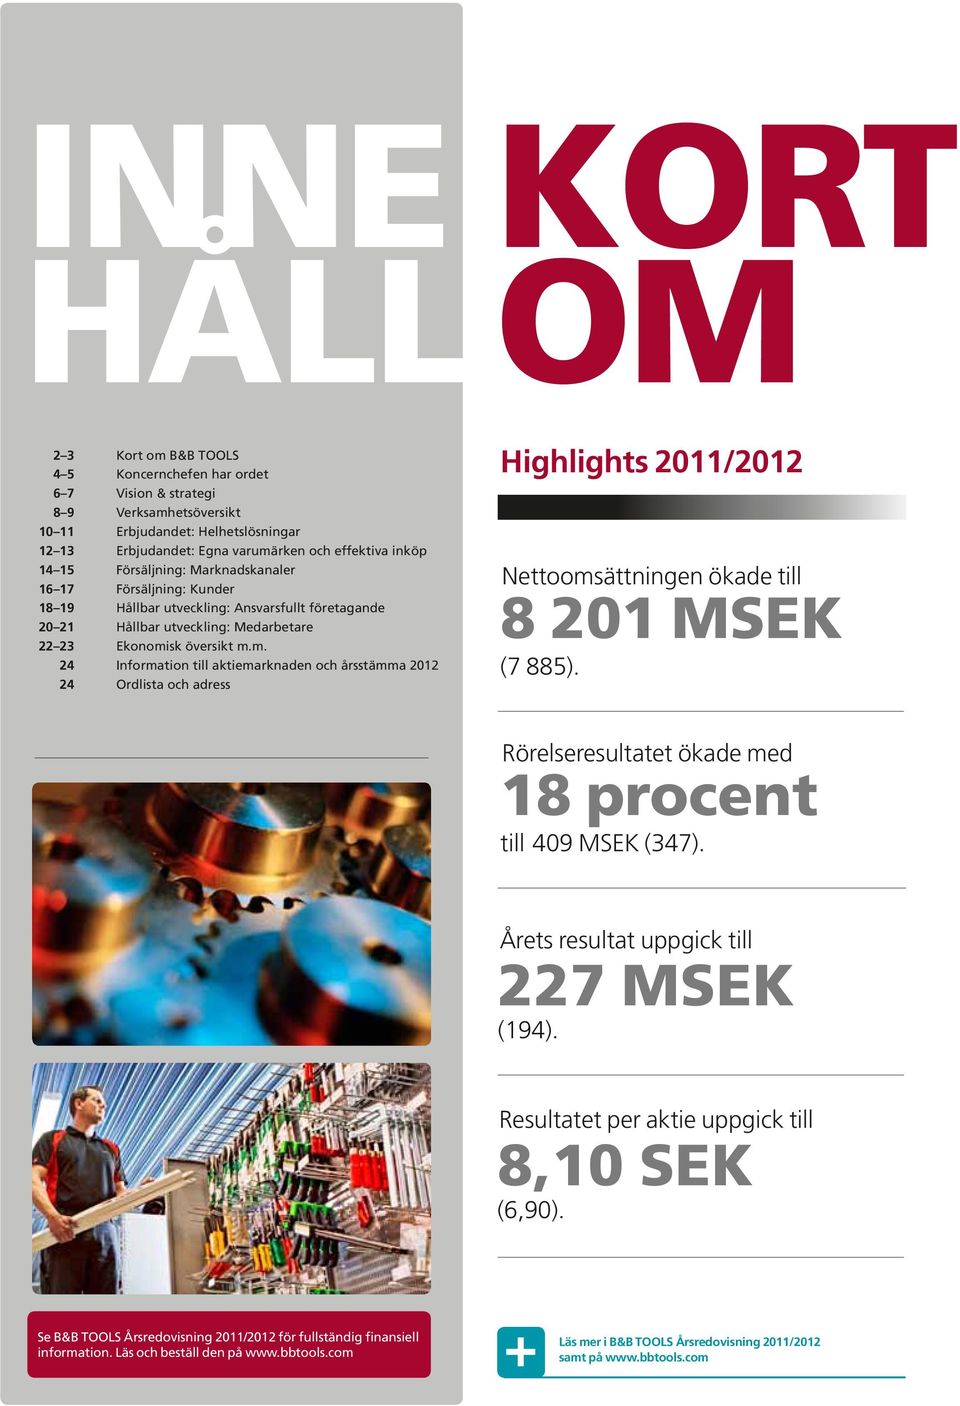 sk översikt m.m. 24 Information till aktiemarknaden och årsstämma 2012 24 Ordlista och adress Highlights 2011/2012 Nettoomsättningen ökade till 8 201 MSEK (7 885).